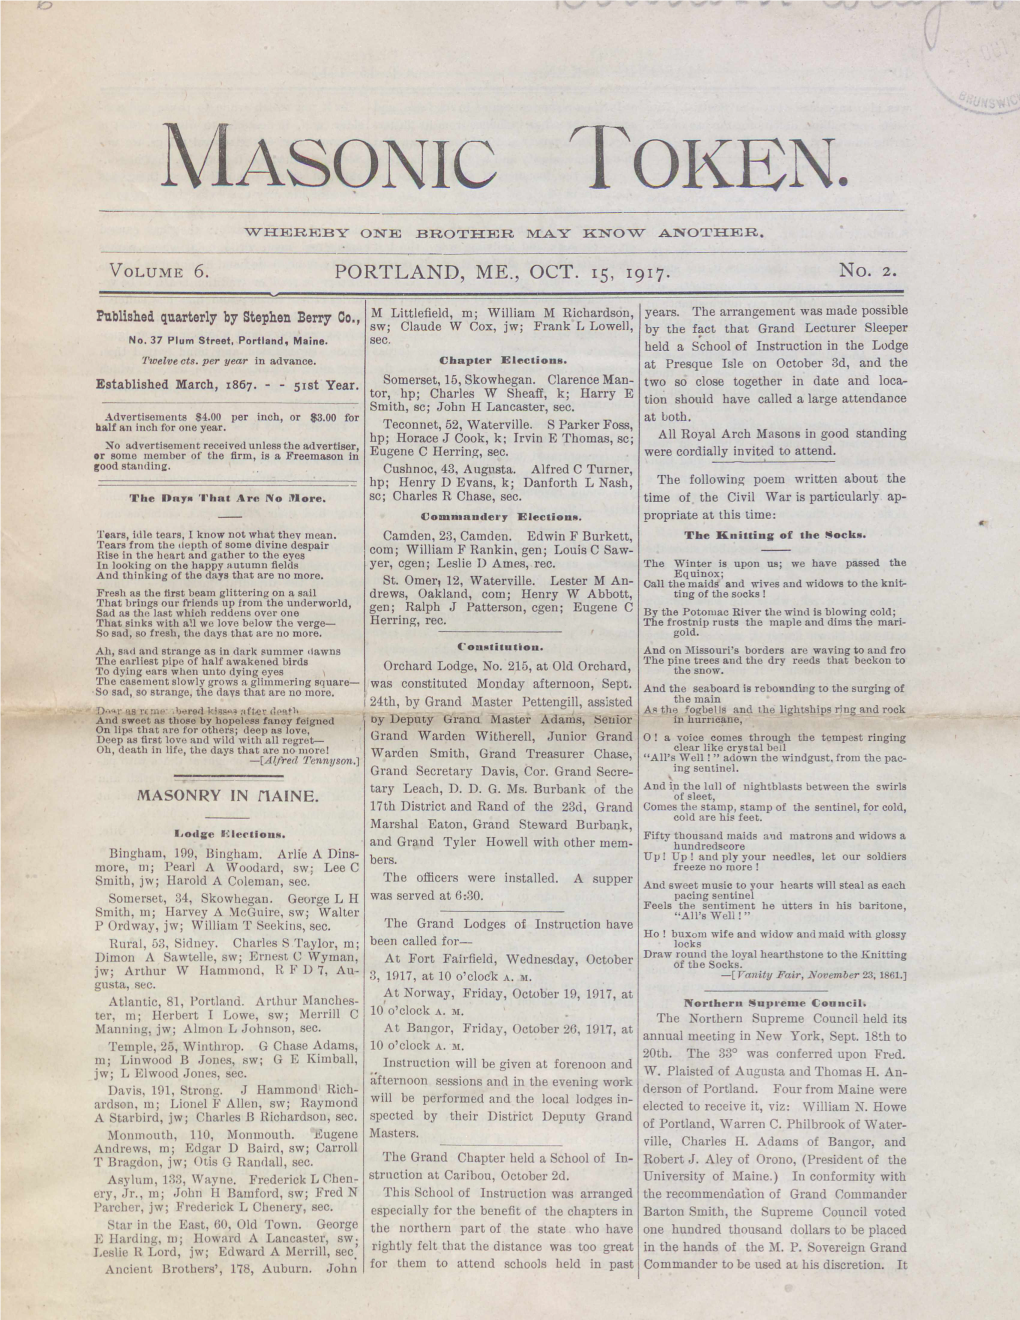 Masonic Token: October 15, 1917